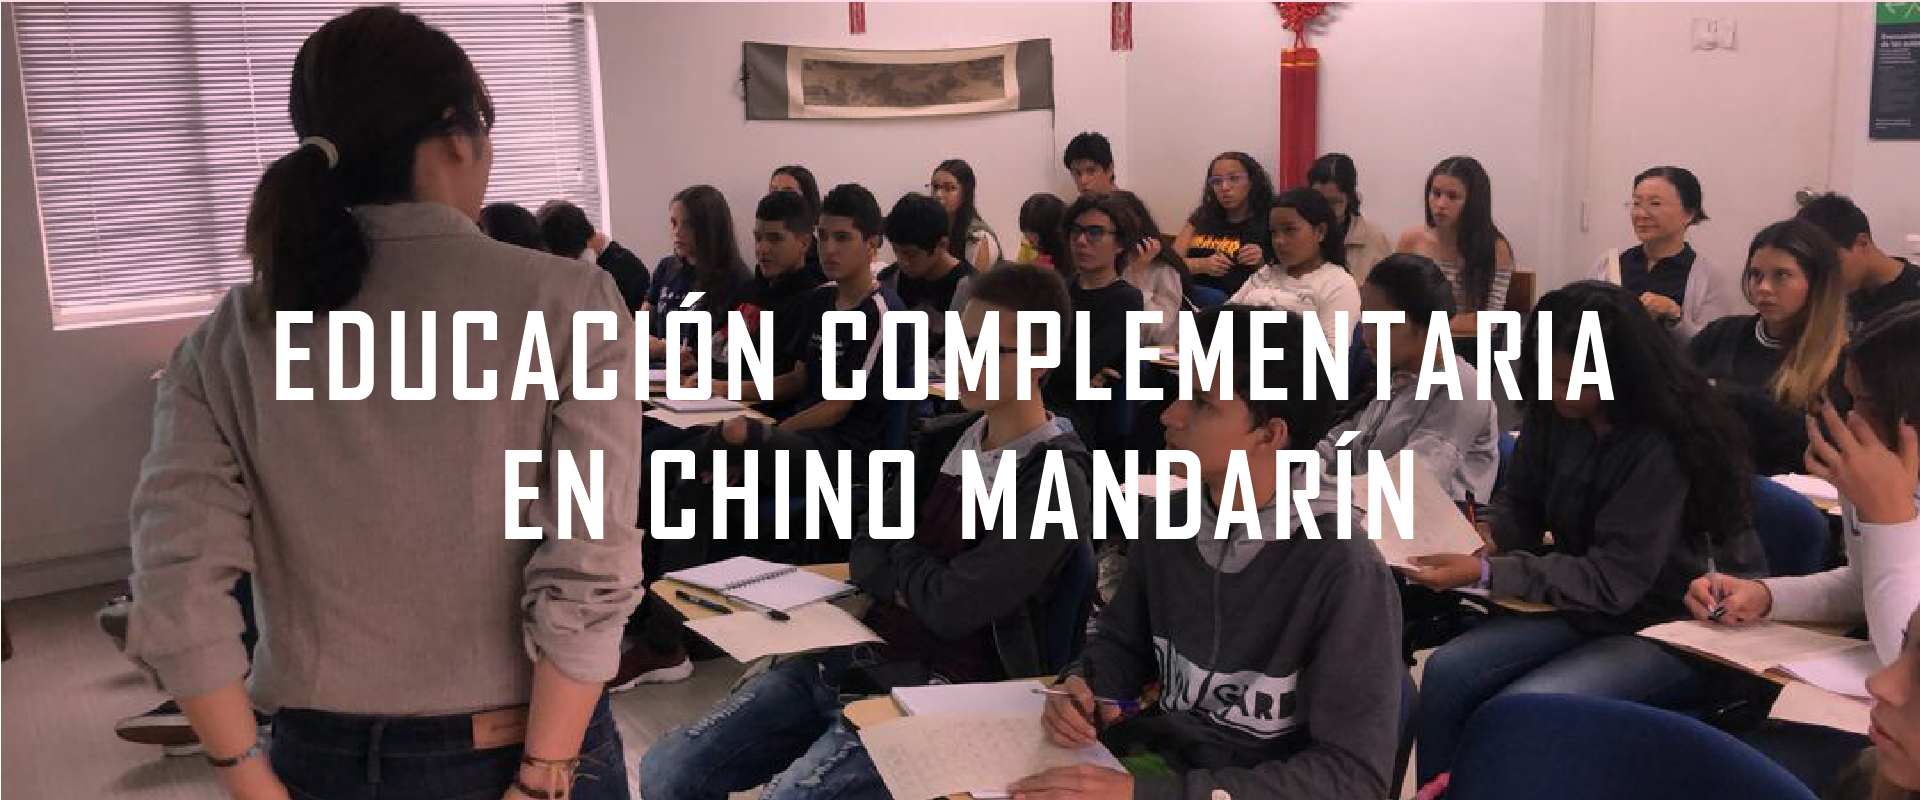 Educanción complemetaria en chino mandarín.png